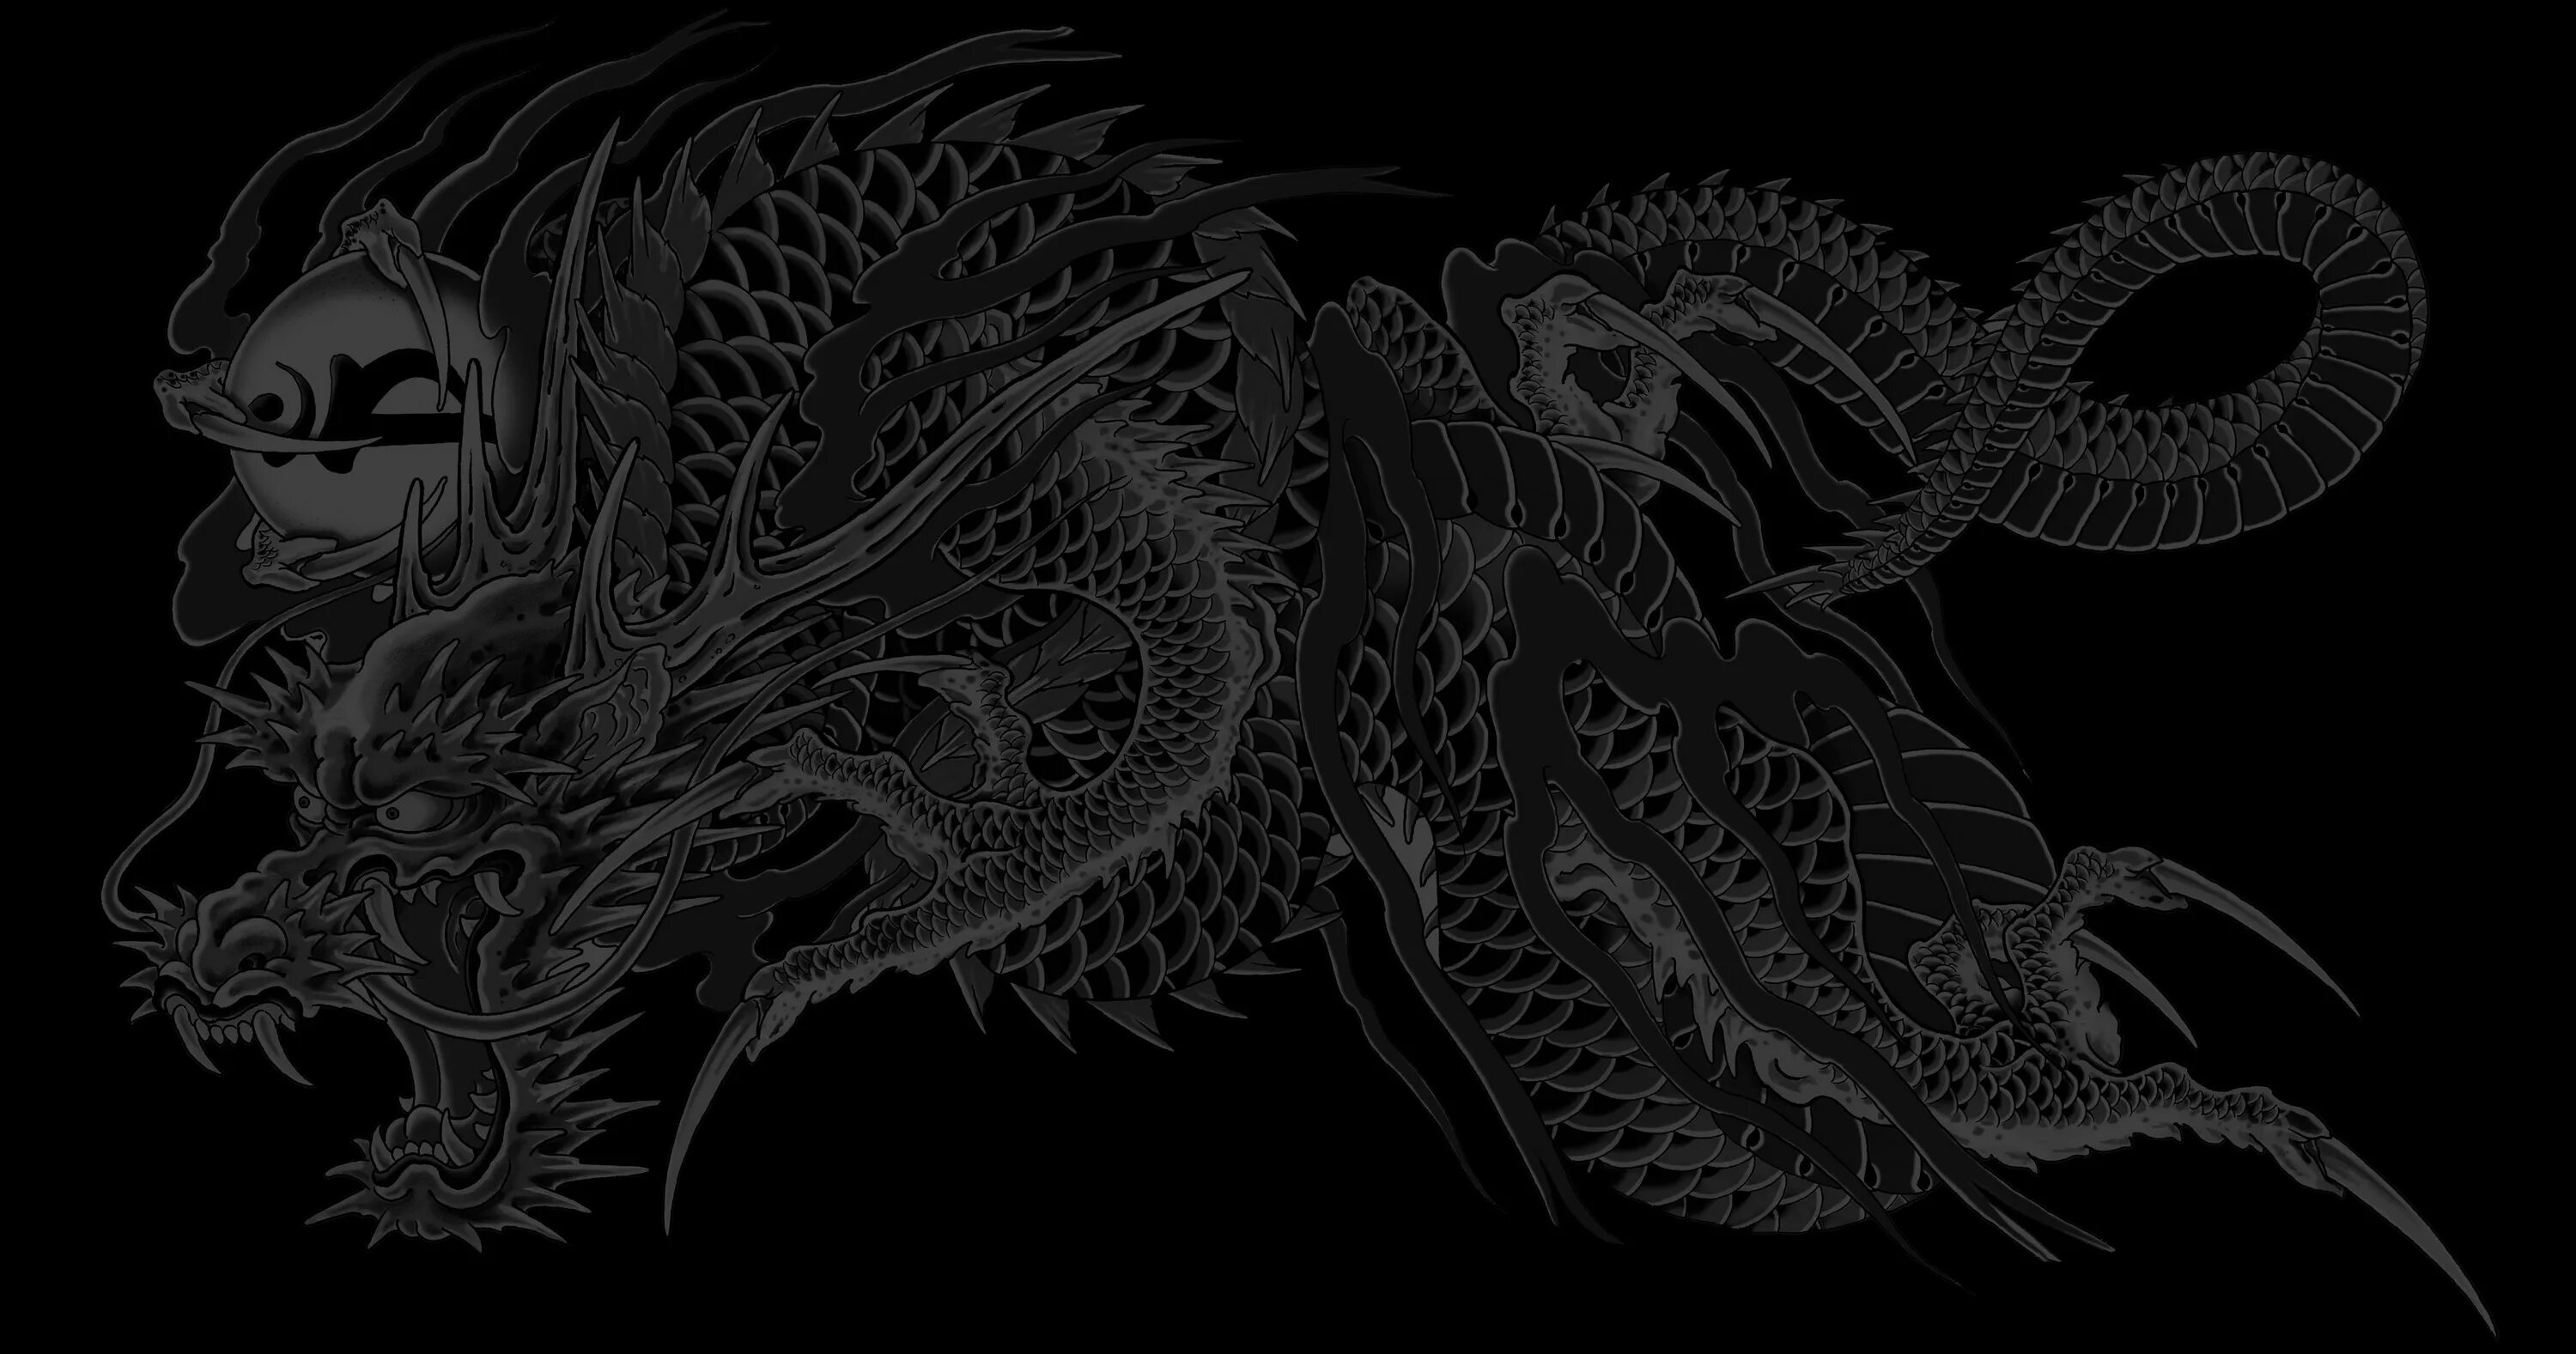 Обои черный дракон. Якудза дракон Минимализм. Китайский дракон на черном фоне. Белый дракон на черном фоне. Картинки на рабочий стол драконы.